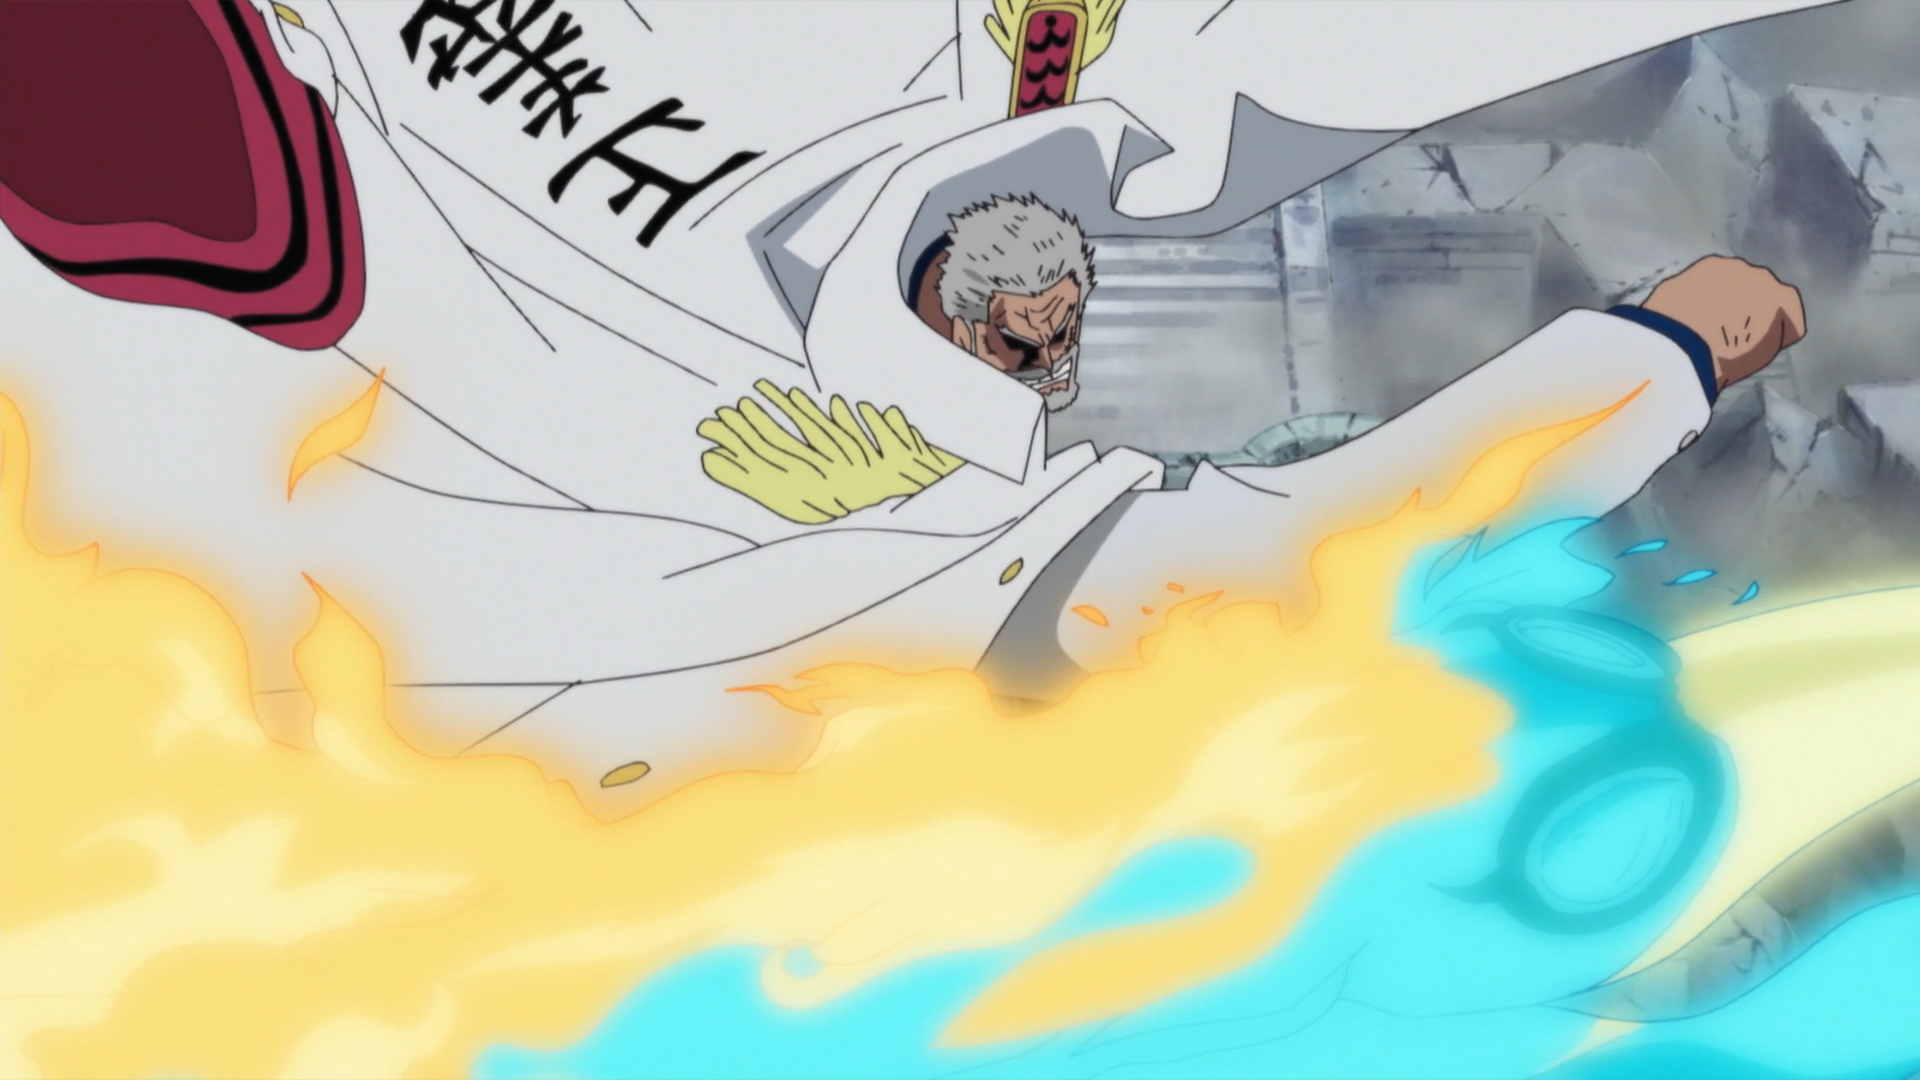 Официальный аниматор One Piece выпускает эпические иллюстрации Гарпа и Коби — за несколько месяцев до выхода эпизода в эфир